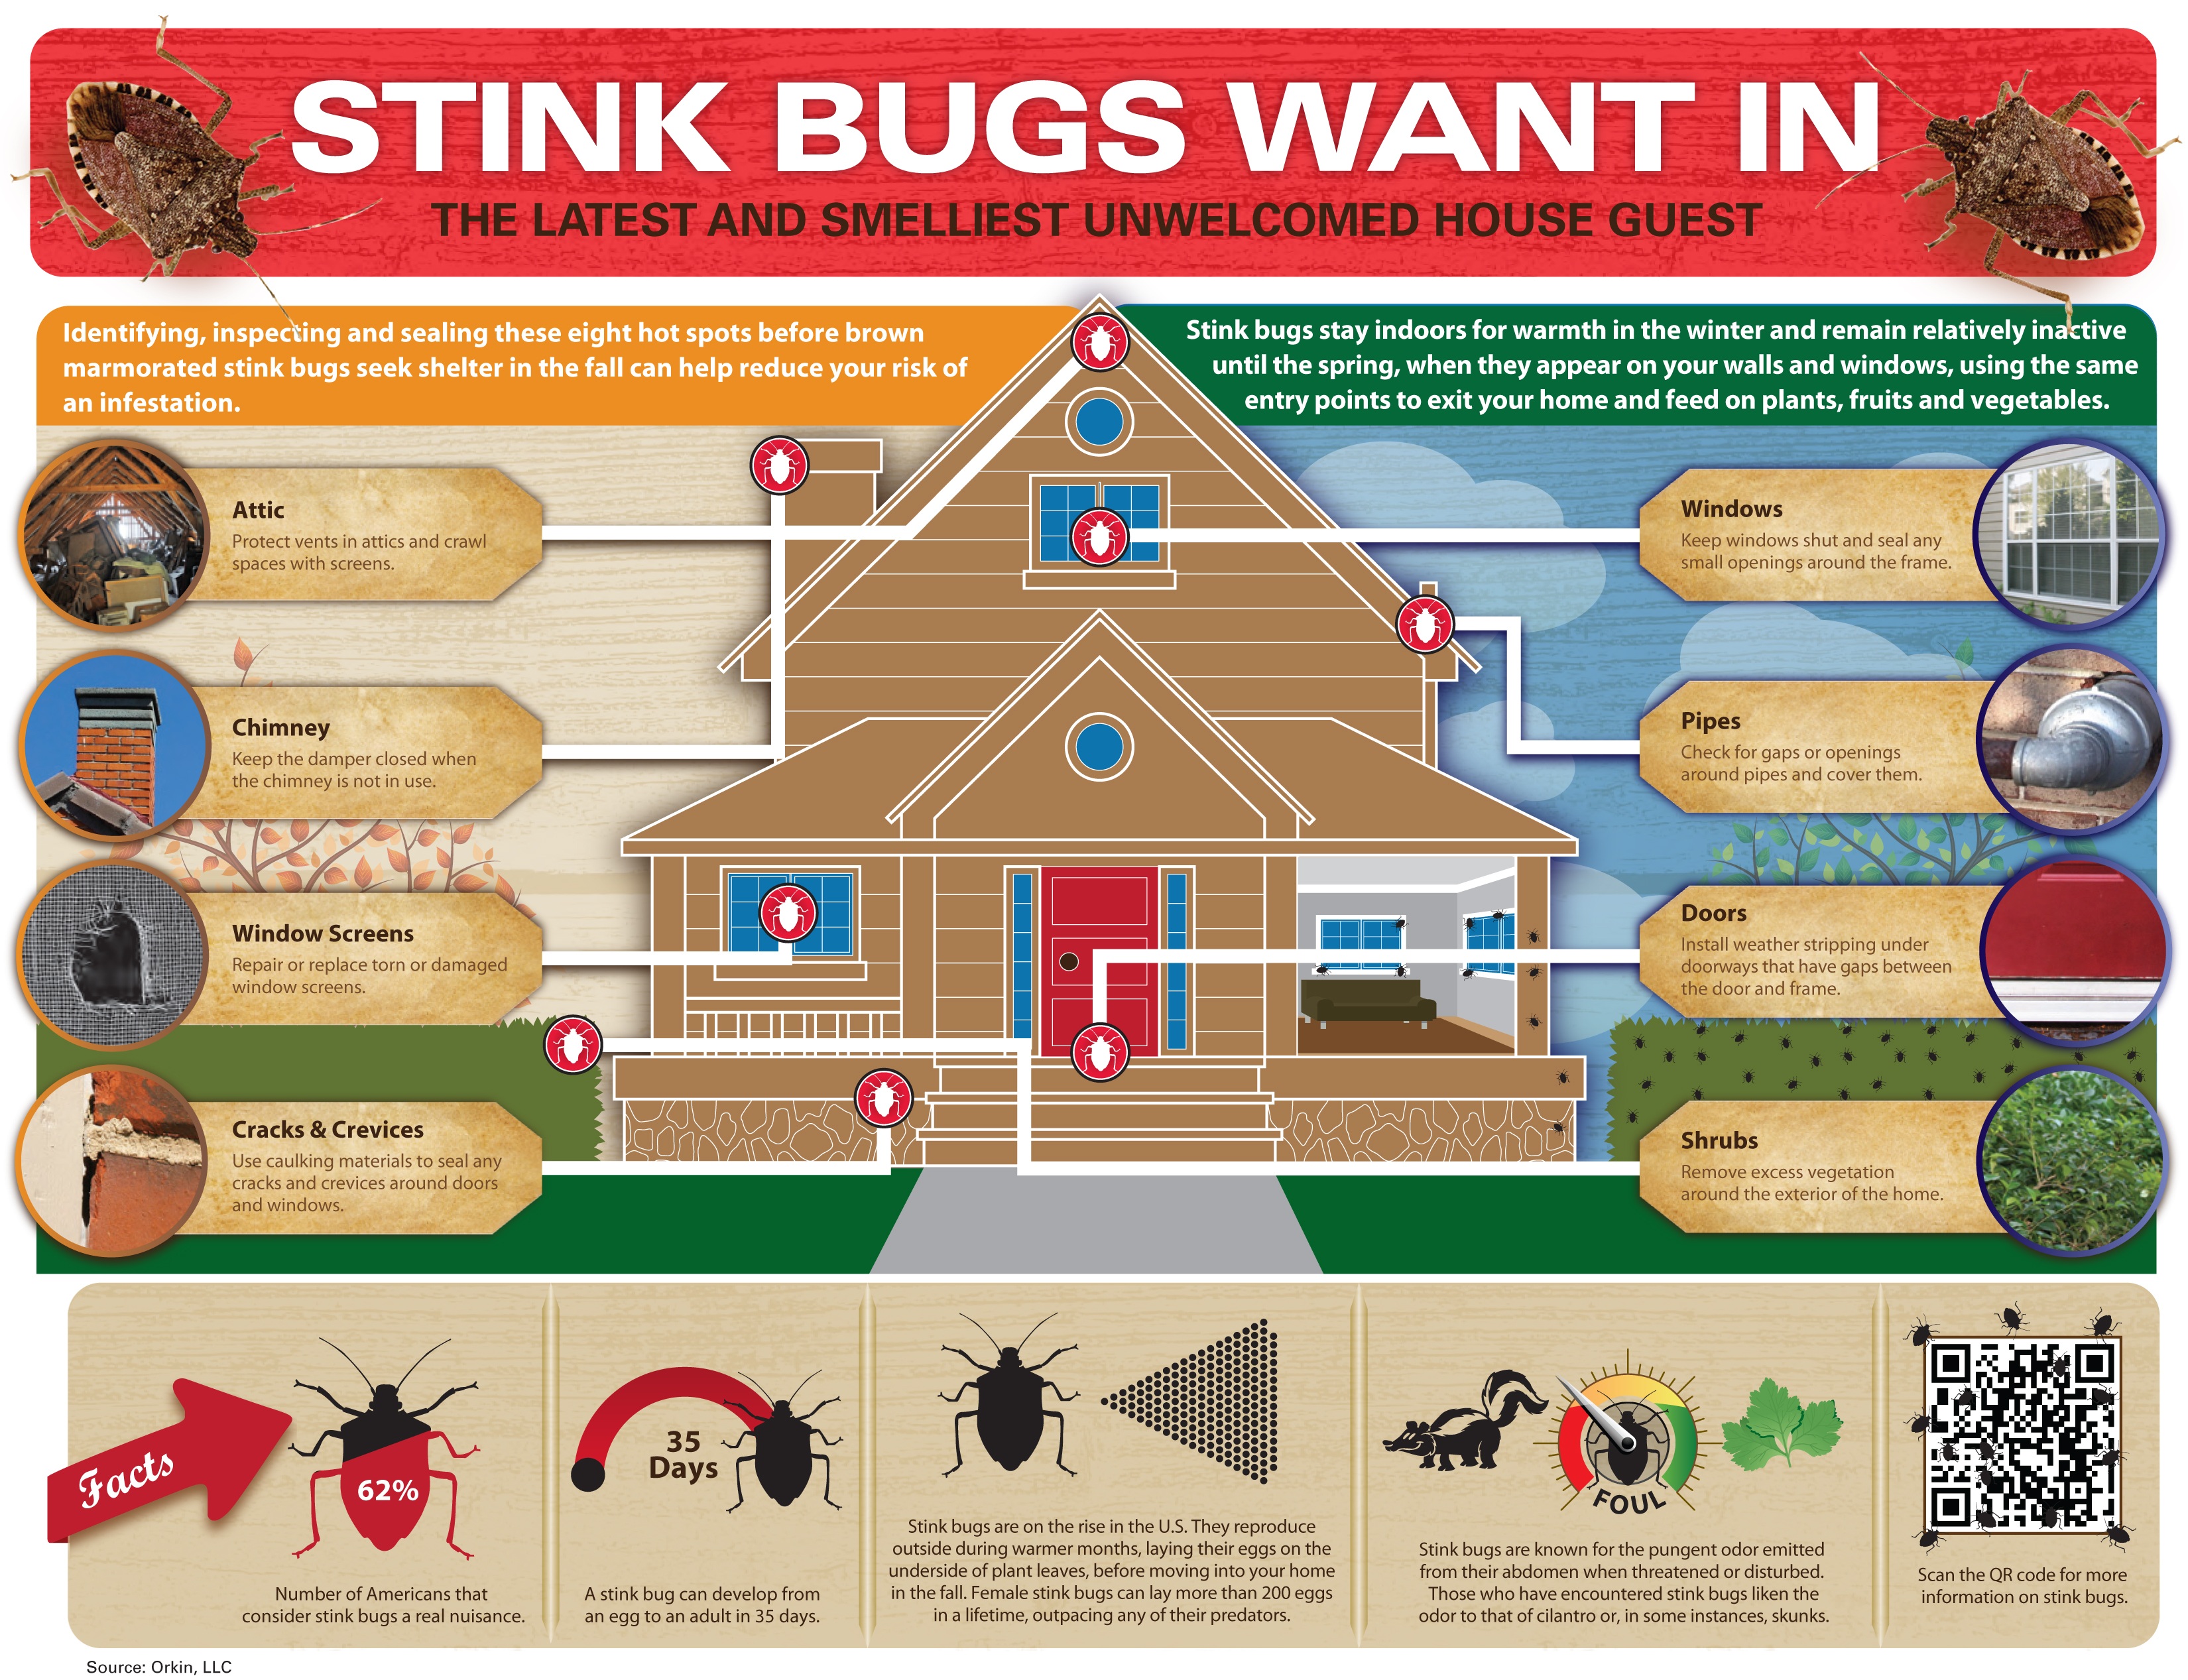 stink-bug-infographic_3300x2534_original